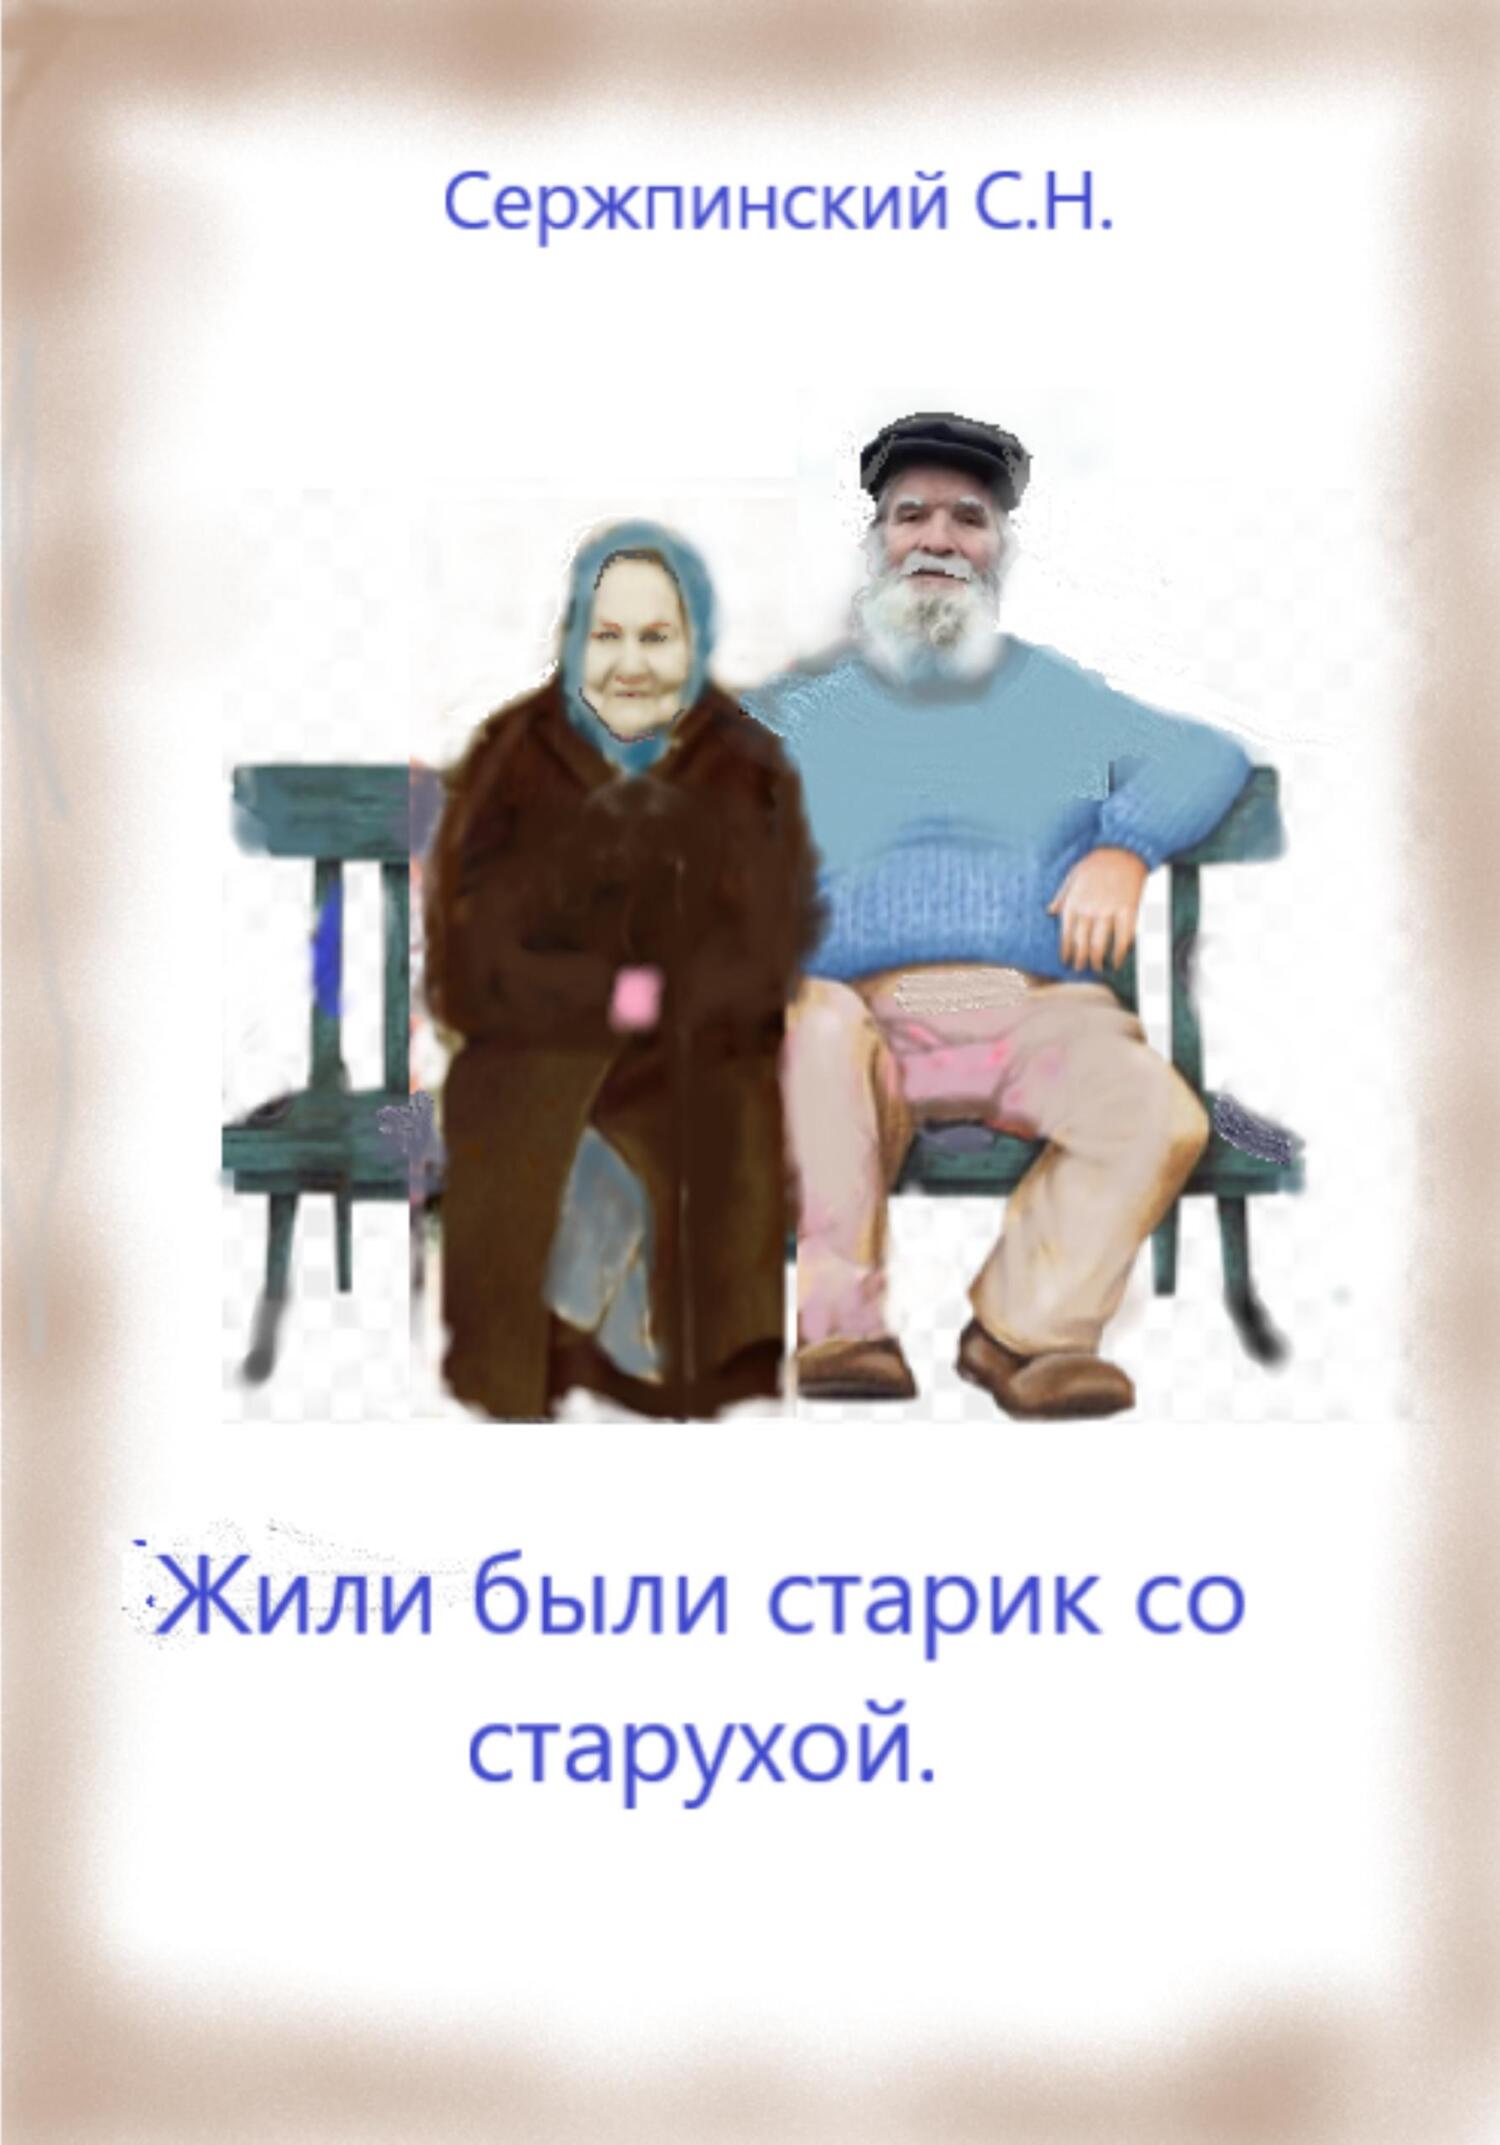 Жили-были старик со старухой - Сергей Николаевич Сержпинский